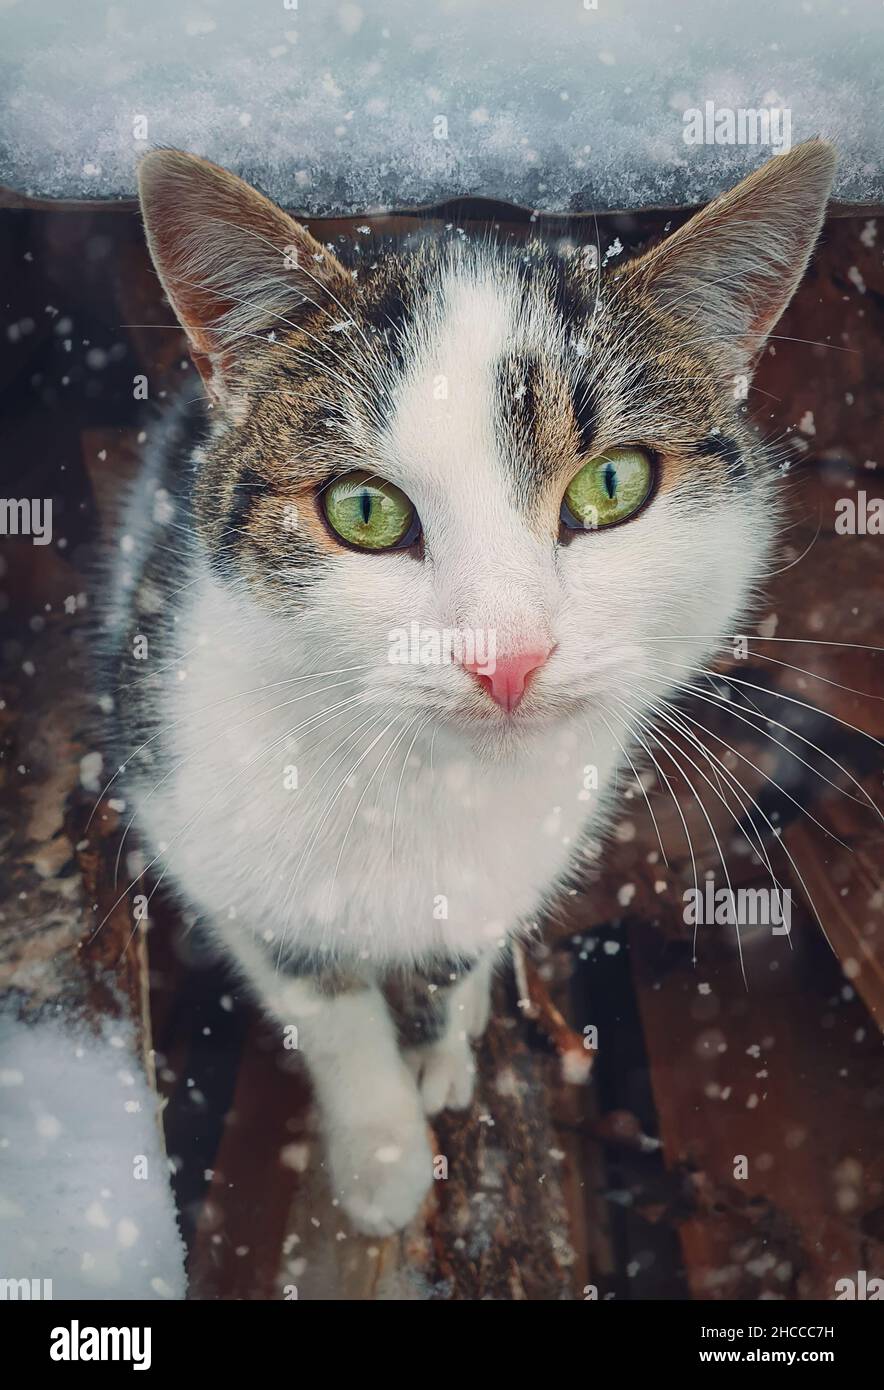 Portrait de chat en hiver.Gros plan chatons à l'extérieur, à l'abri de la neige.Beau visage de chaton, yeux merveilleux.PET à l'extérieur, scène de neige Banque D'Images